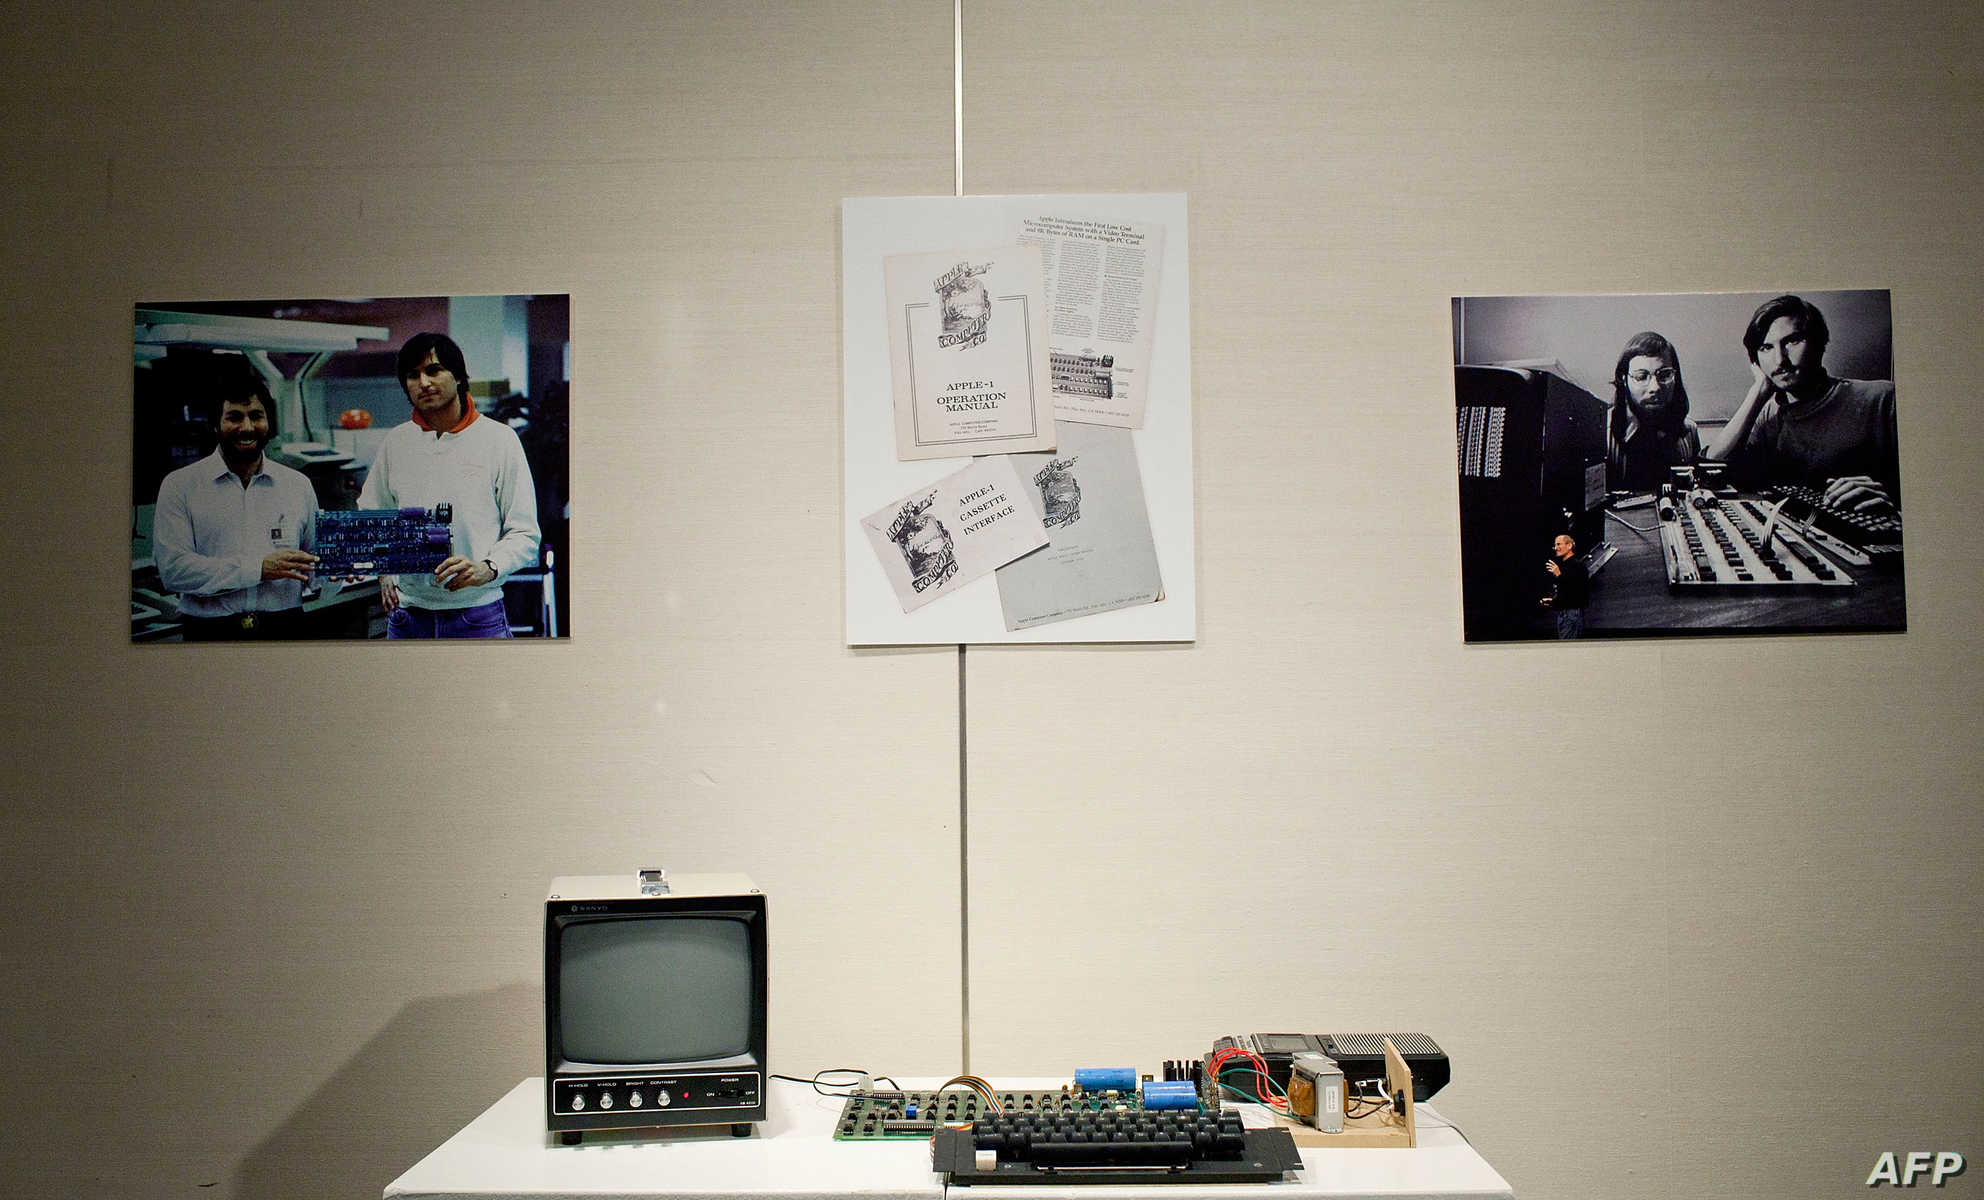 أول كومبيوتر أبل صنع في 1976